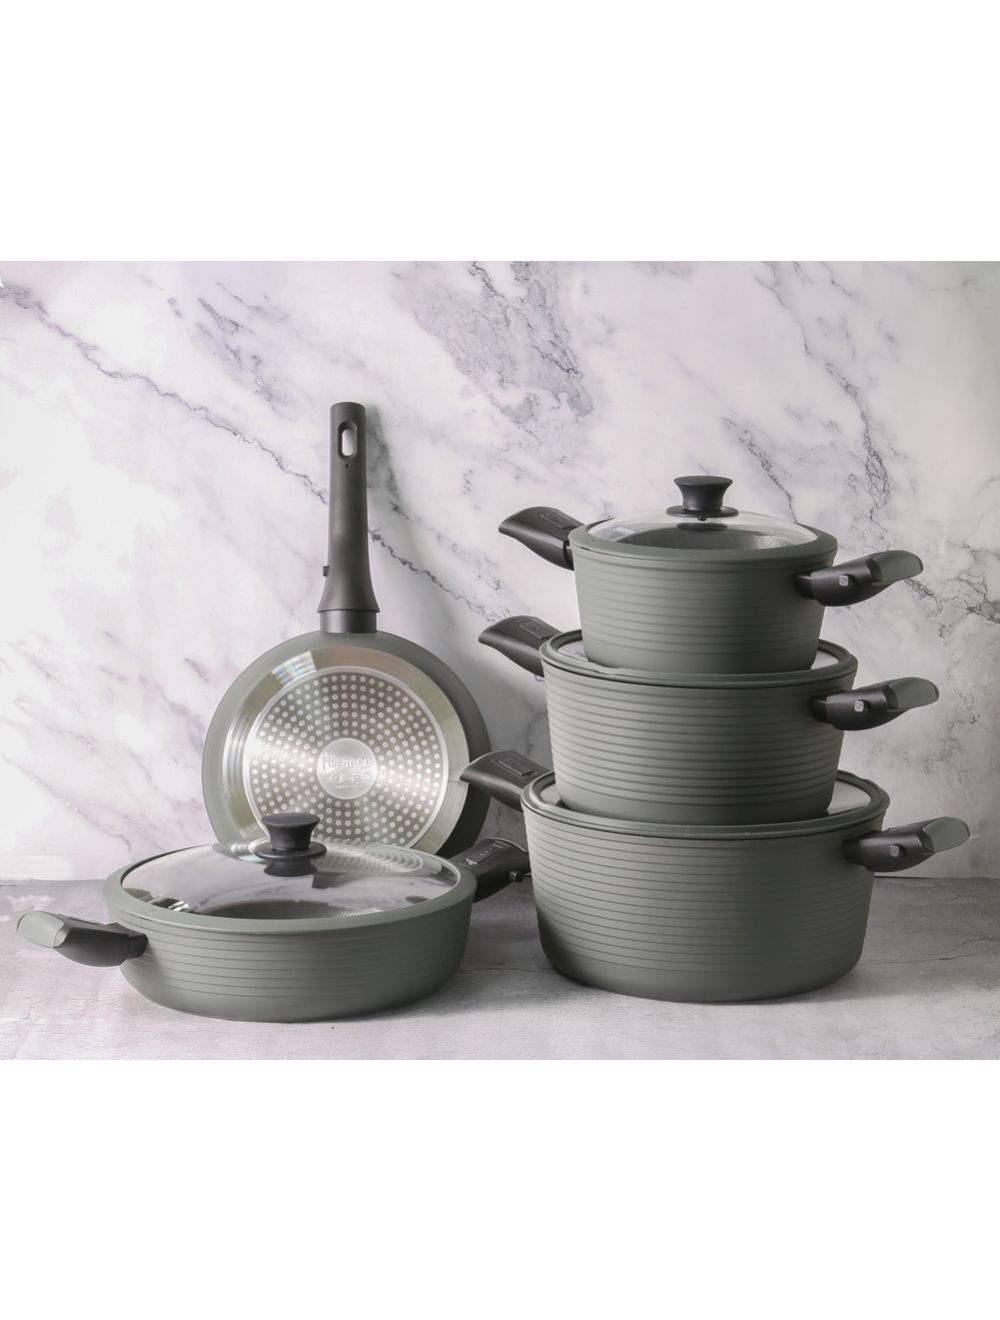 Pots and Pans Set with Detachable Handle - 12 Pcs Nonstick Ceramic